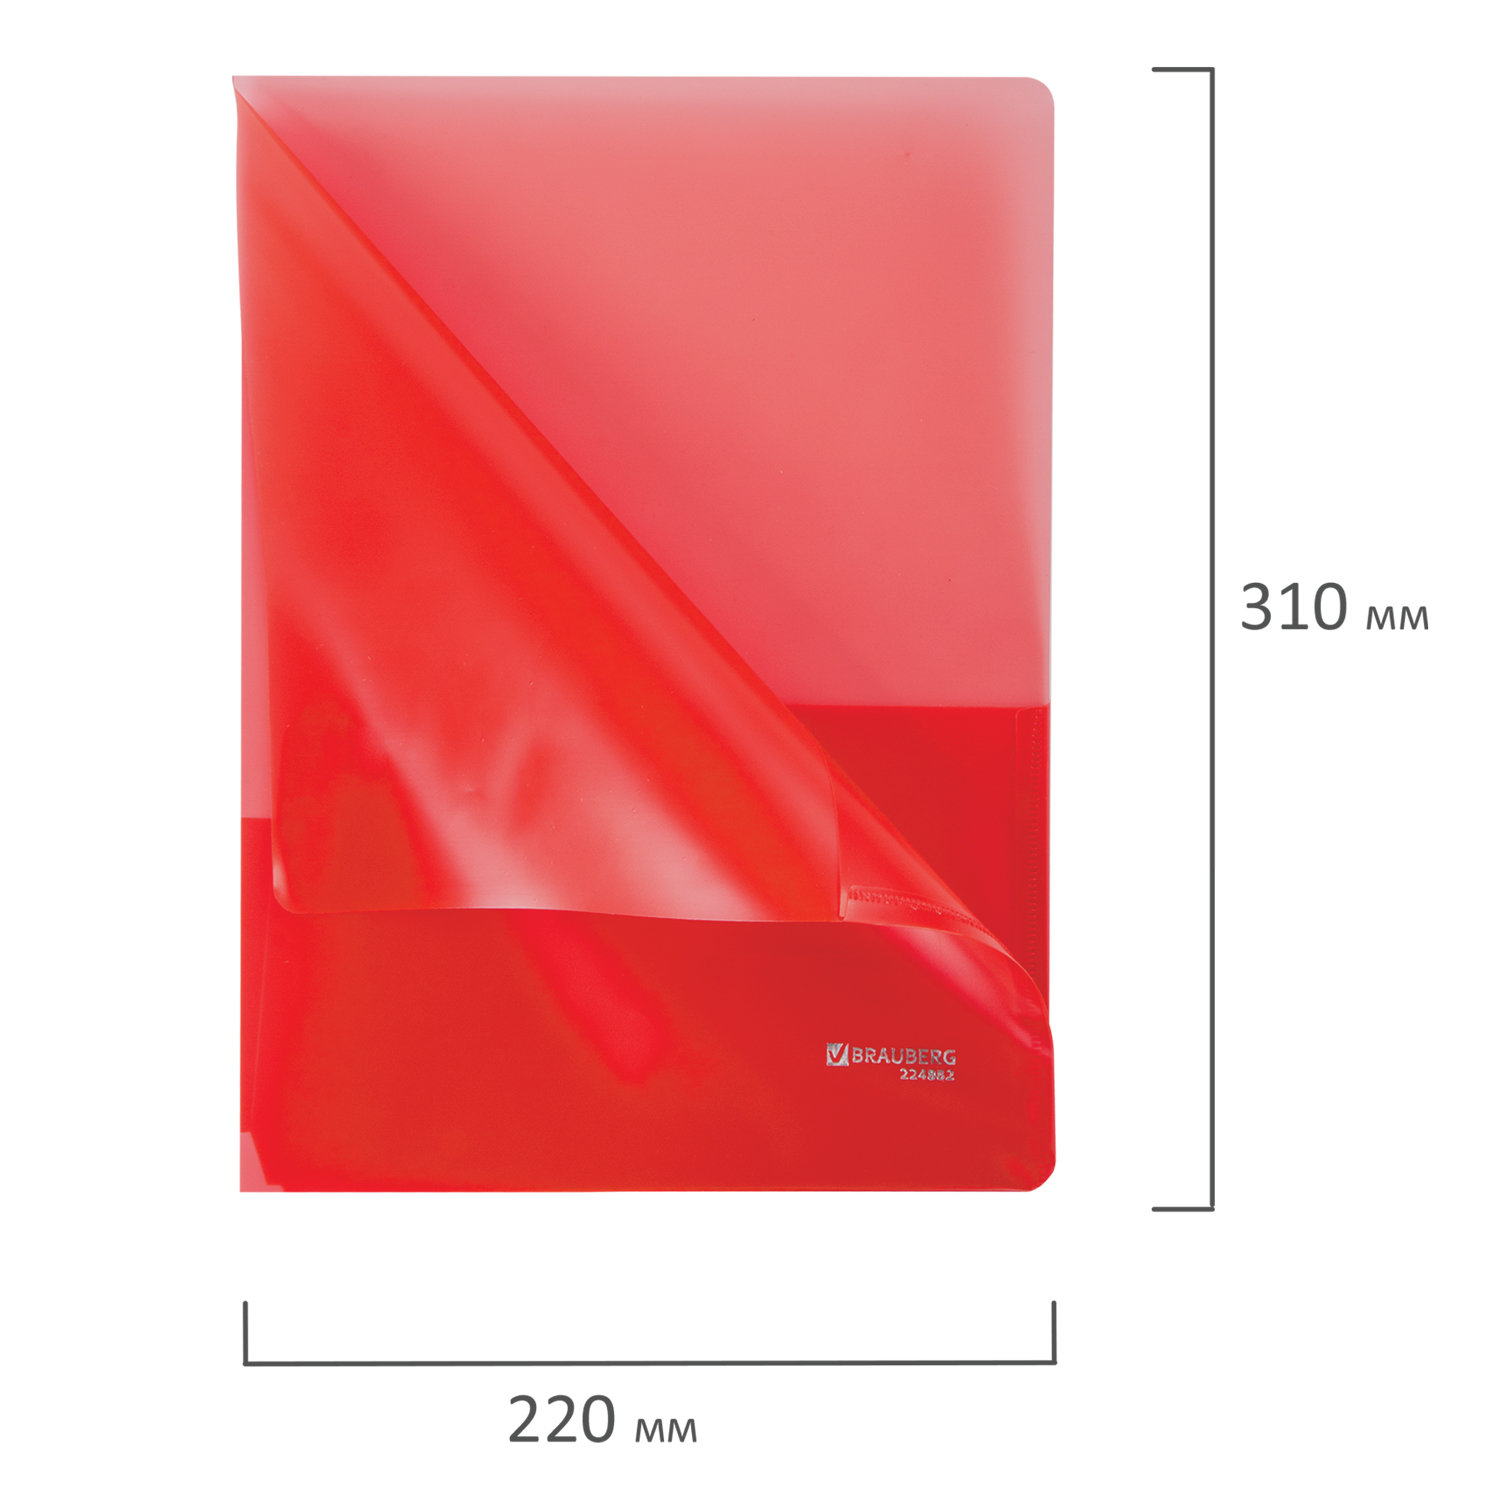 Папка-уголок 2 кармана BRAUBERG, красная, 0,18мм, 224882